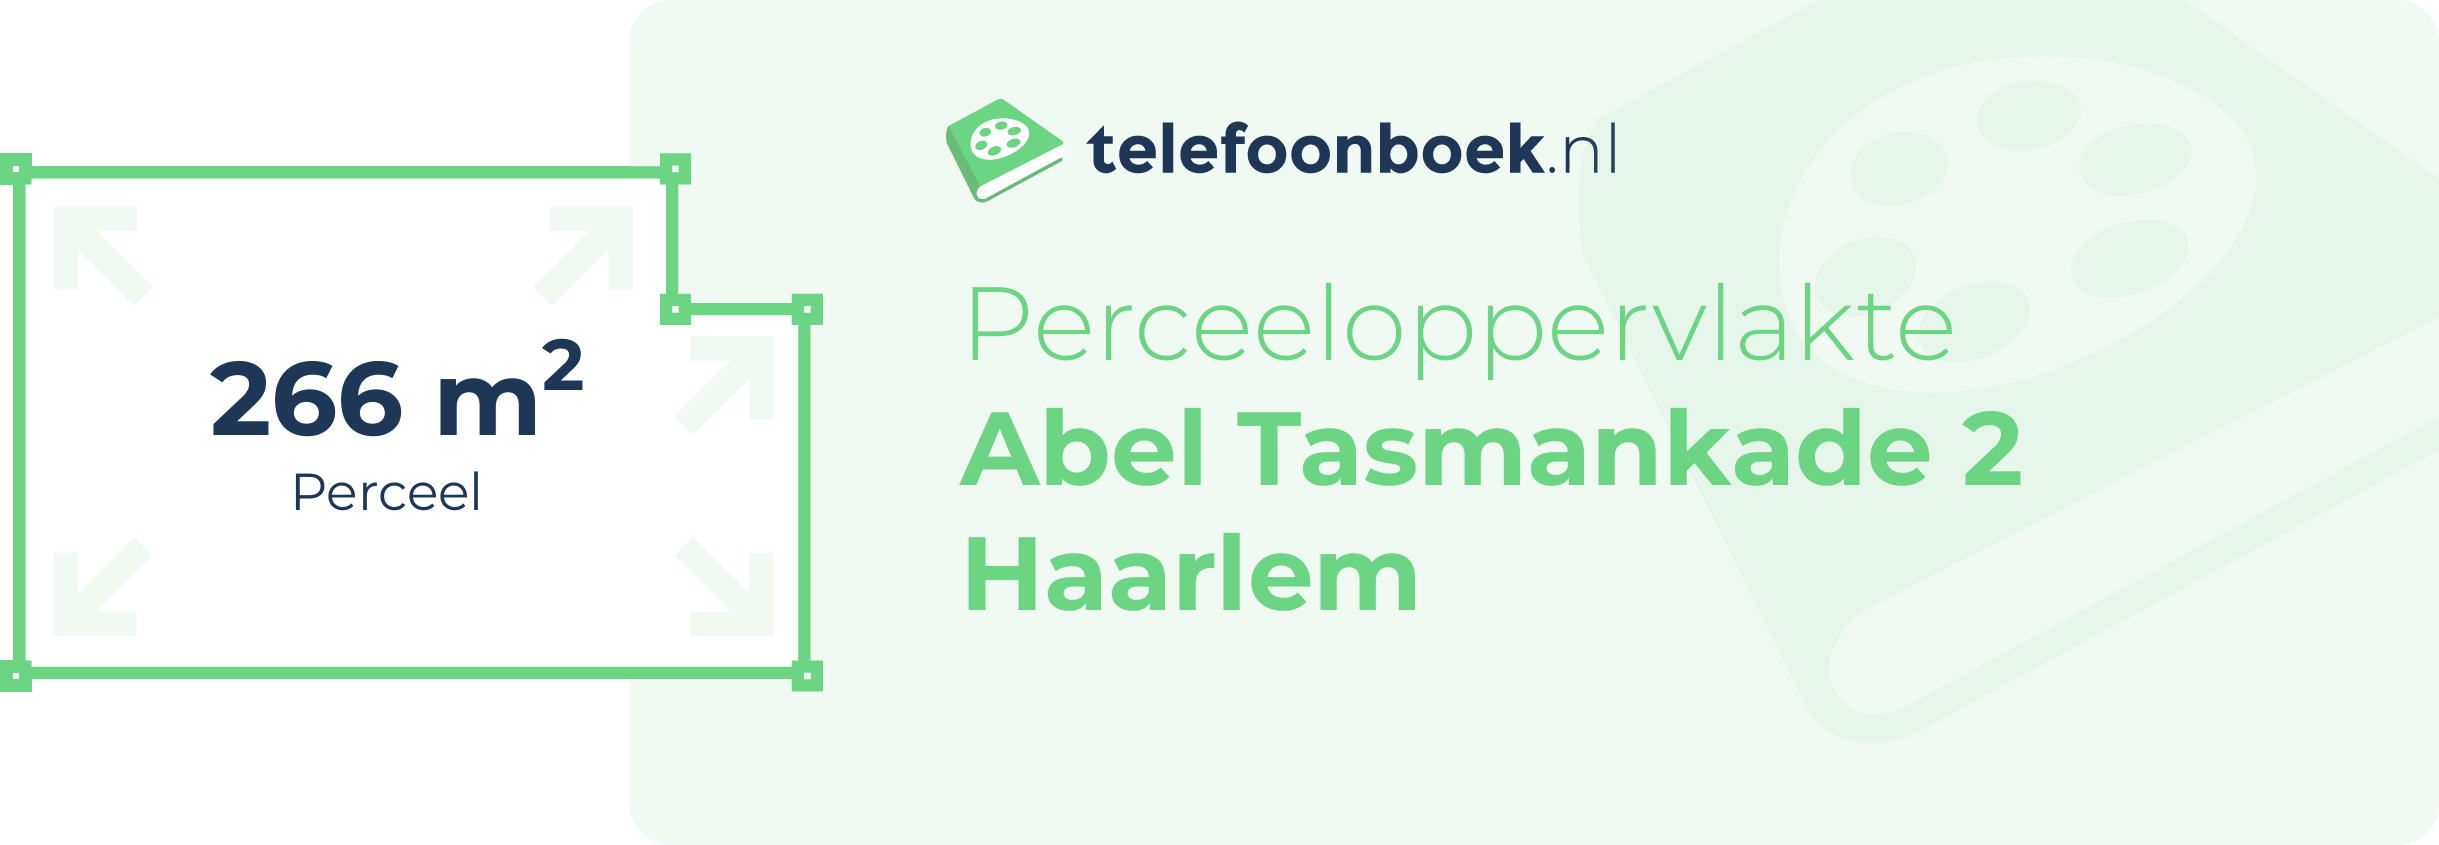 Perceeloppervlakte Abel Tasmankade 2 Haarlem